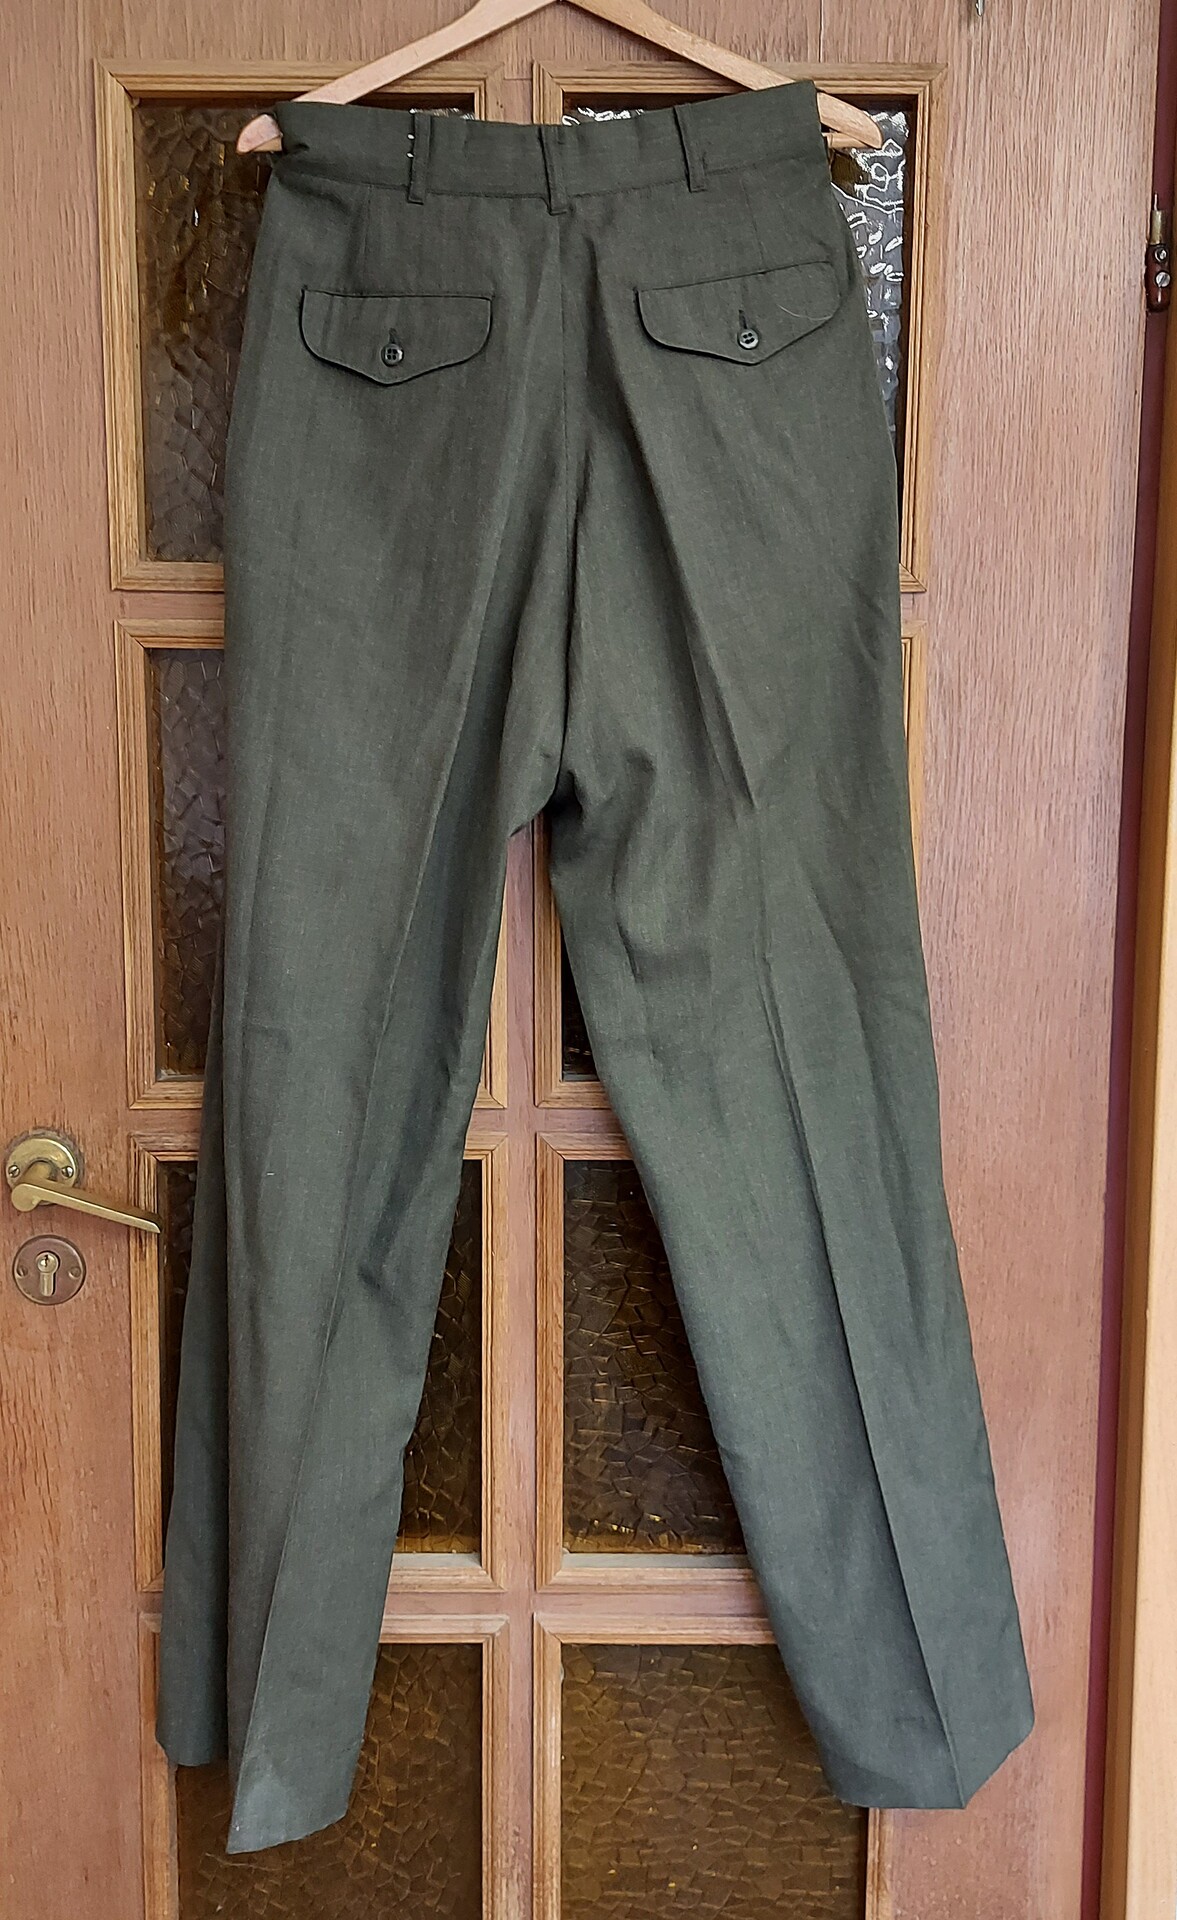 Spodnie Munduru wyjsciowego USMC - Zielone - 34R